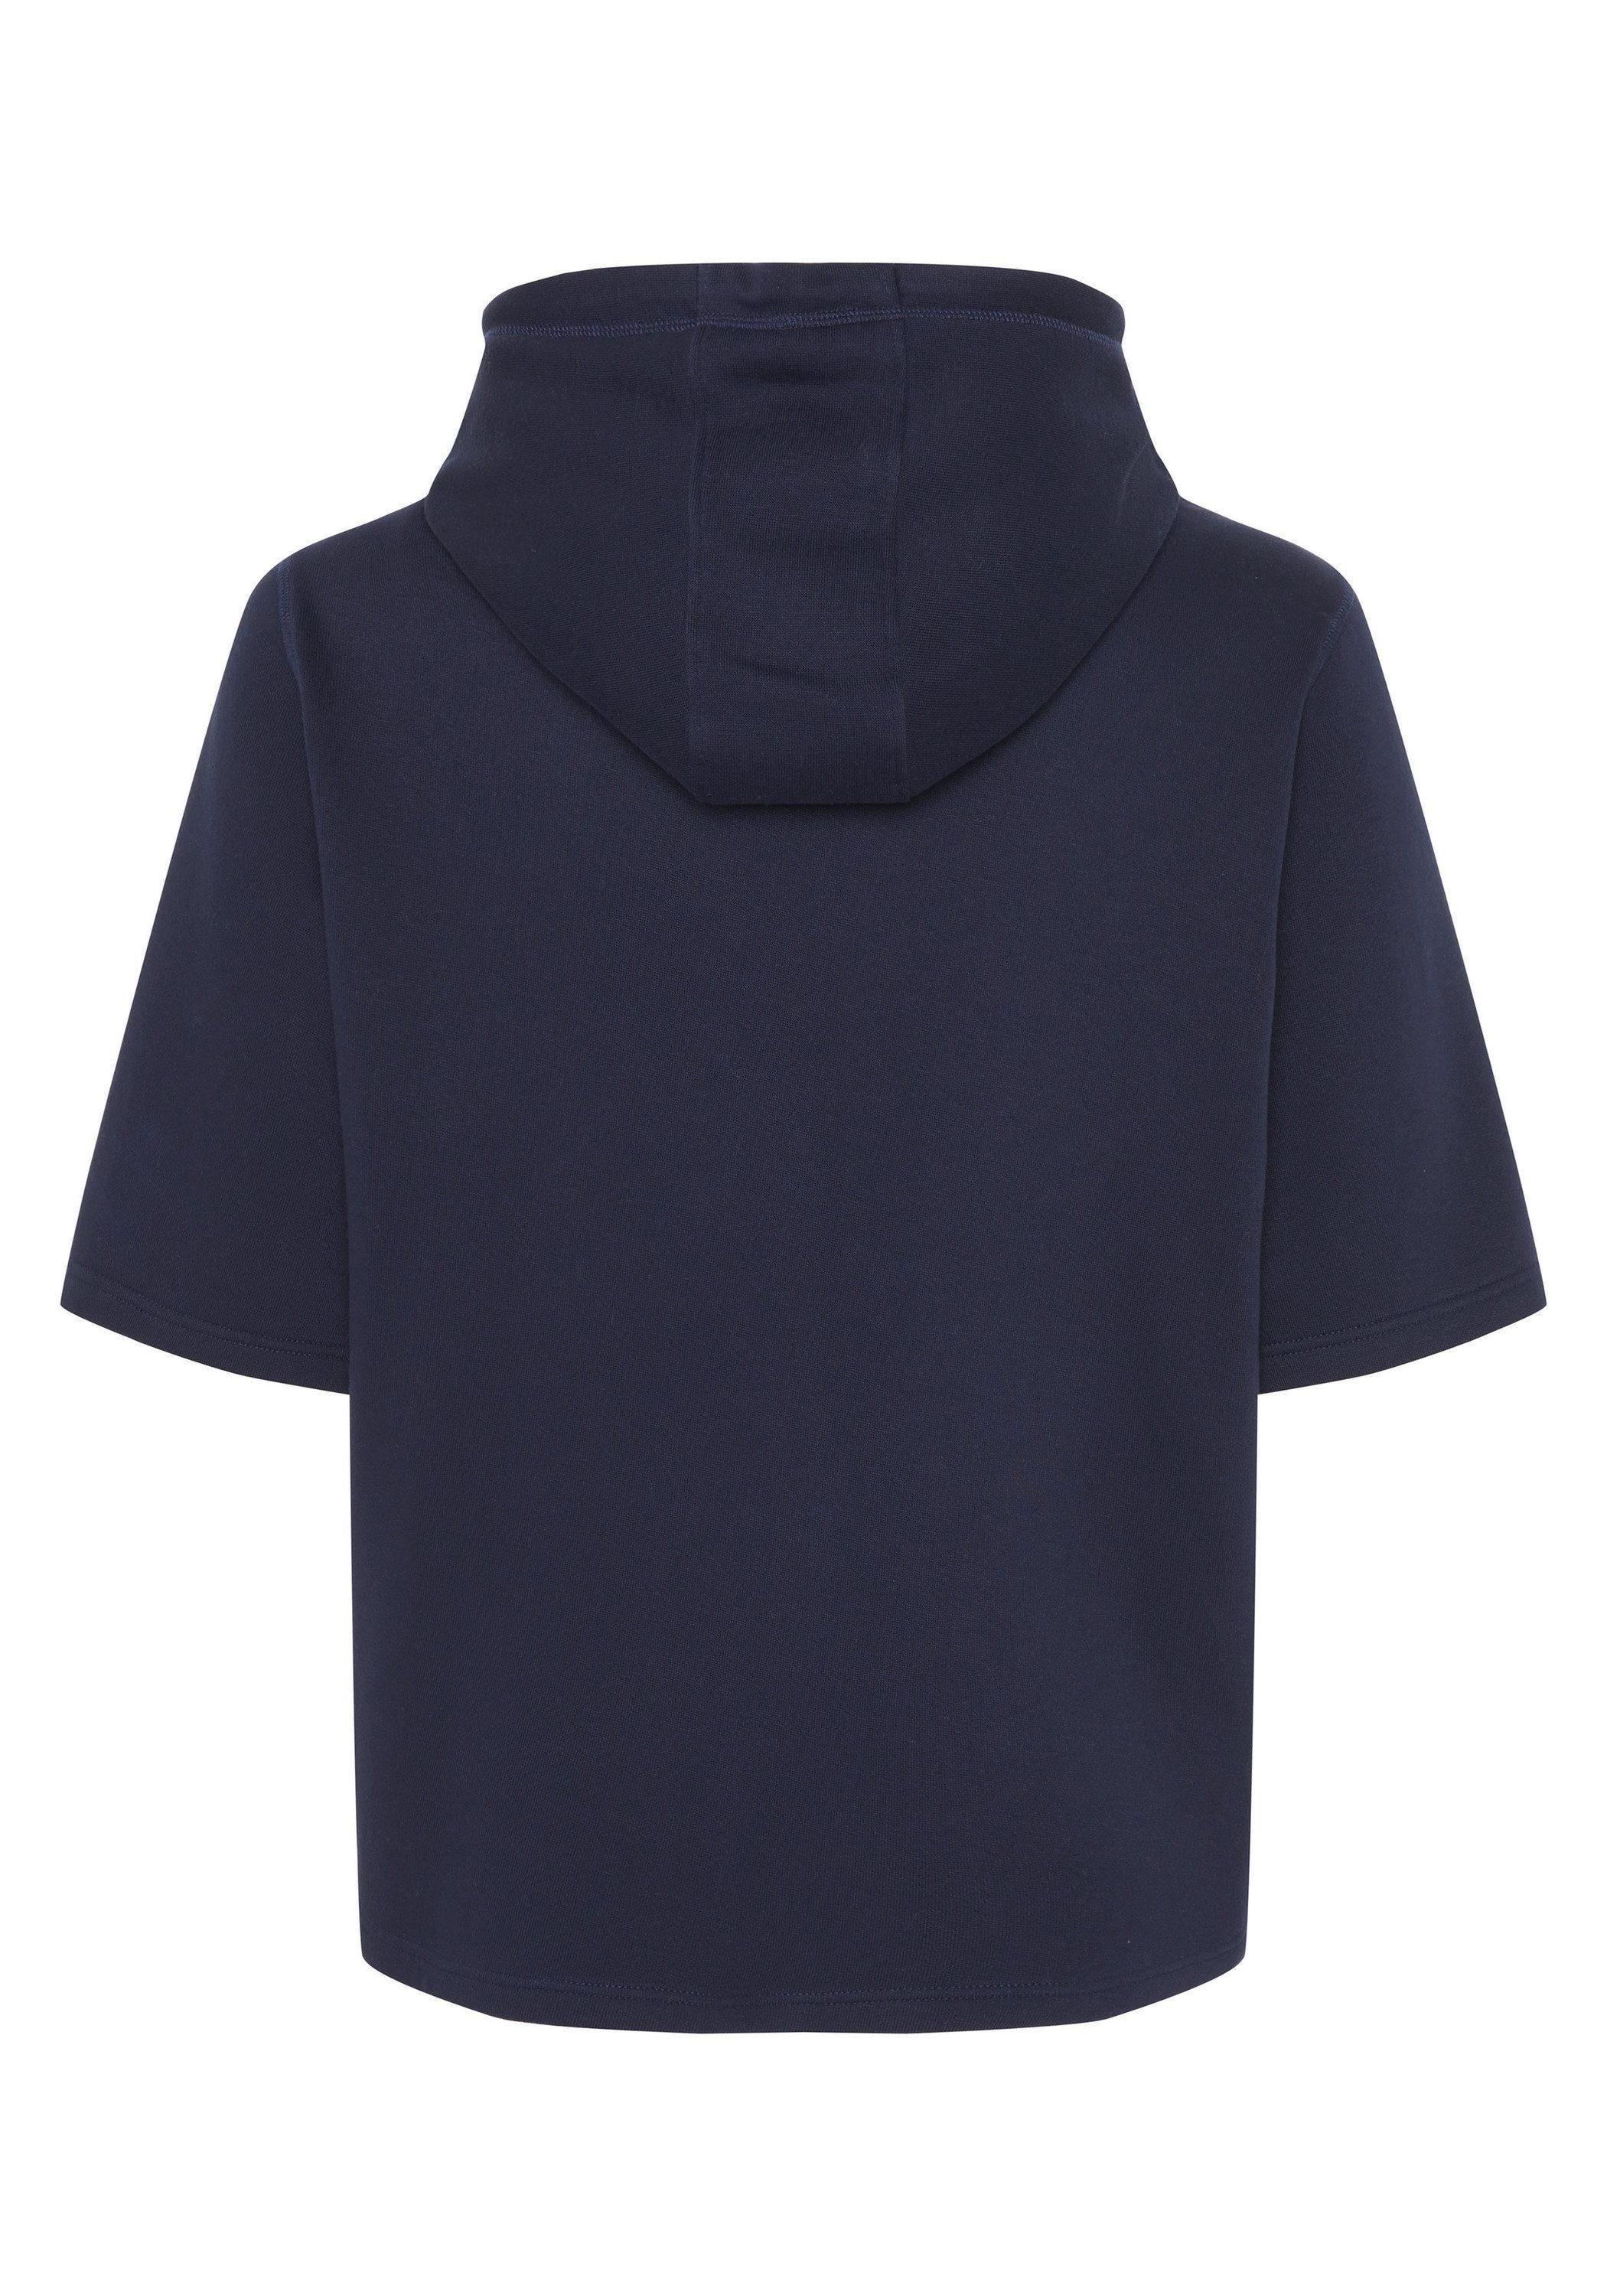 Chiemsee Kapuzensweatshirt Kurzarm-Hoodie blau dunkel